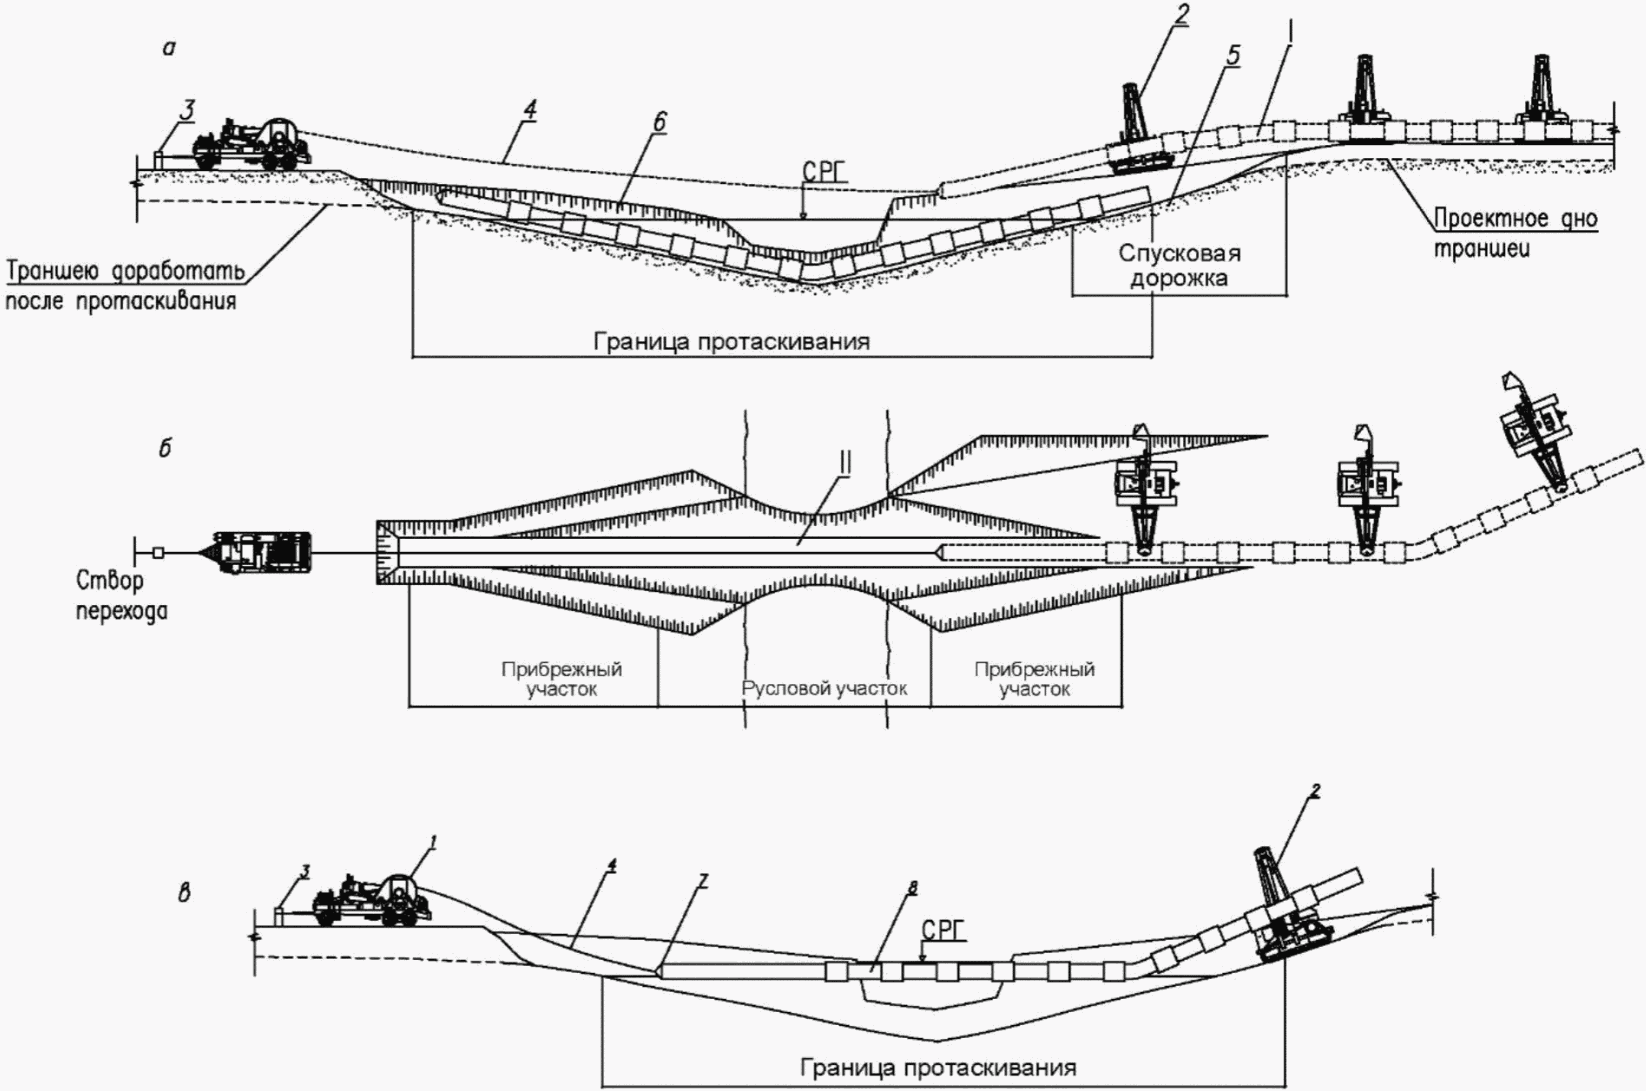 Подводный переход газопровода. Траншейный метод прокладки трубопроводов схема. Тяговая лебедка для протаскивания трубопровода. Укладка трубопровода методом протаскивания. Схема подводного перехода нефтепровода.